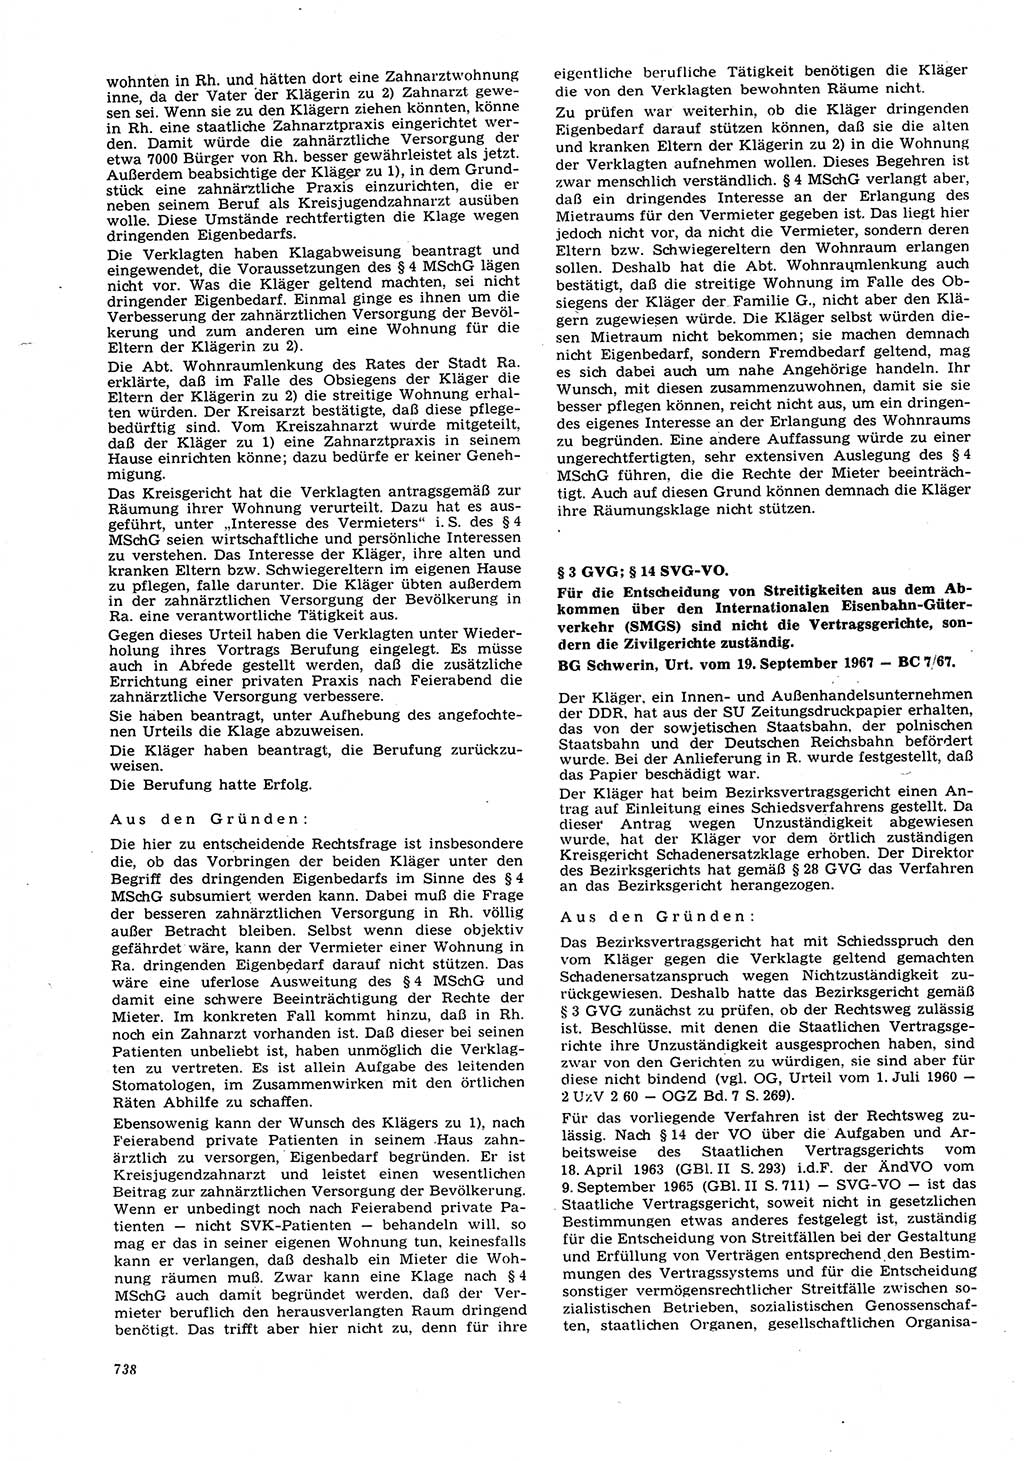 Neue Justiz (NJ), Zeitschrift für Recht und Rechtswissenschaft [Deutsche Demokratische Republik (DDR)], 21. Jahrgang 1967, Seite 738 (NJ DDR 1967, S. 738)